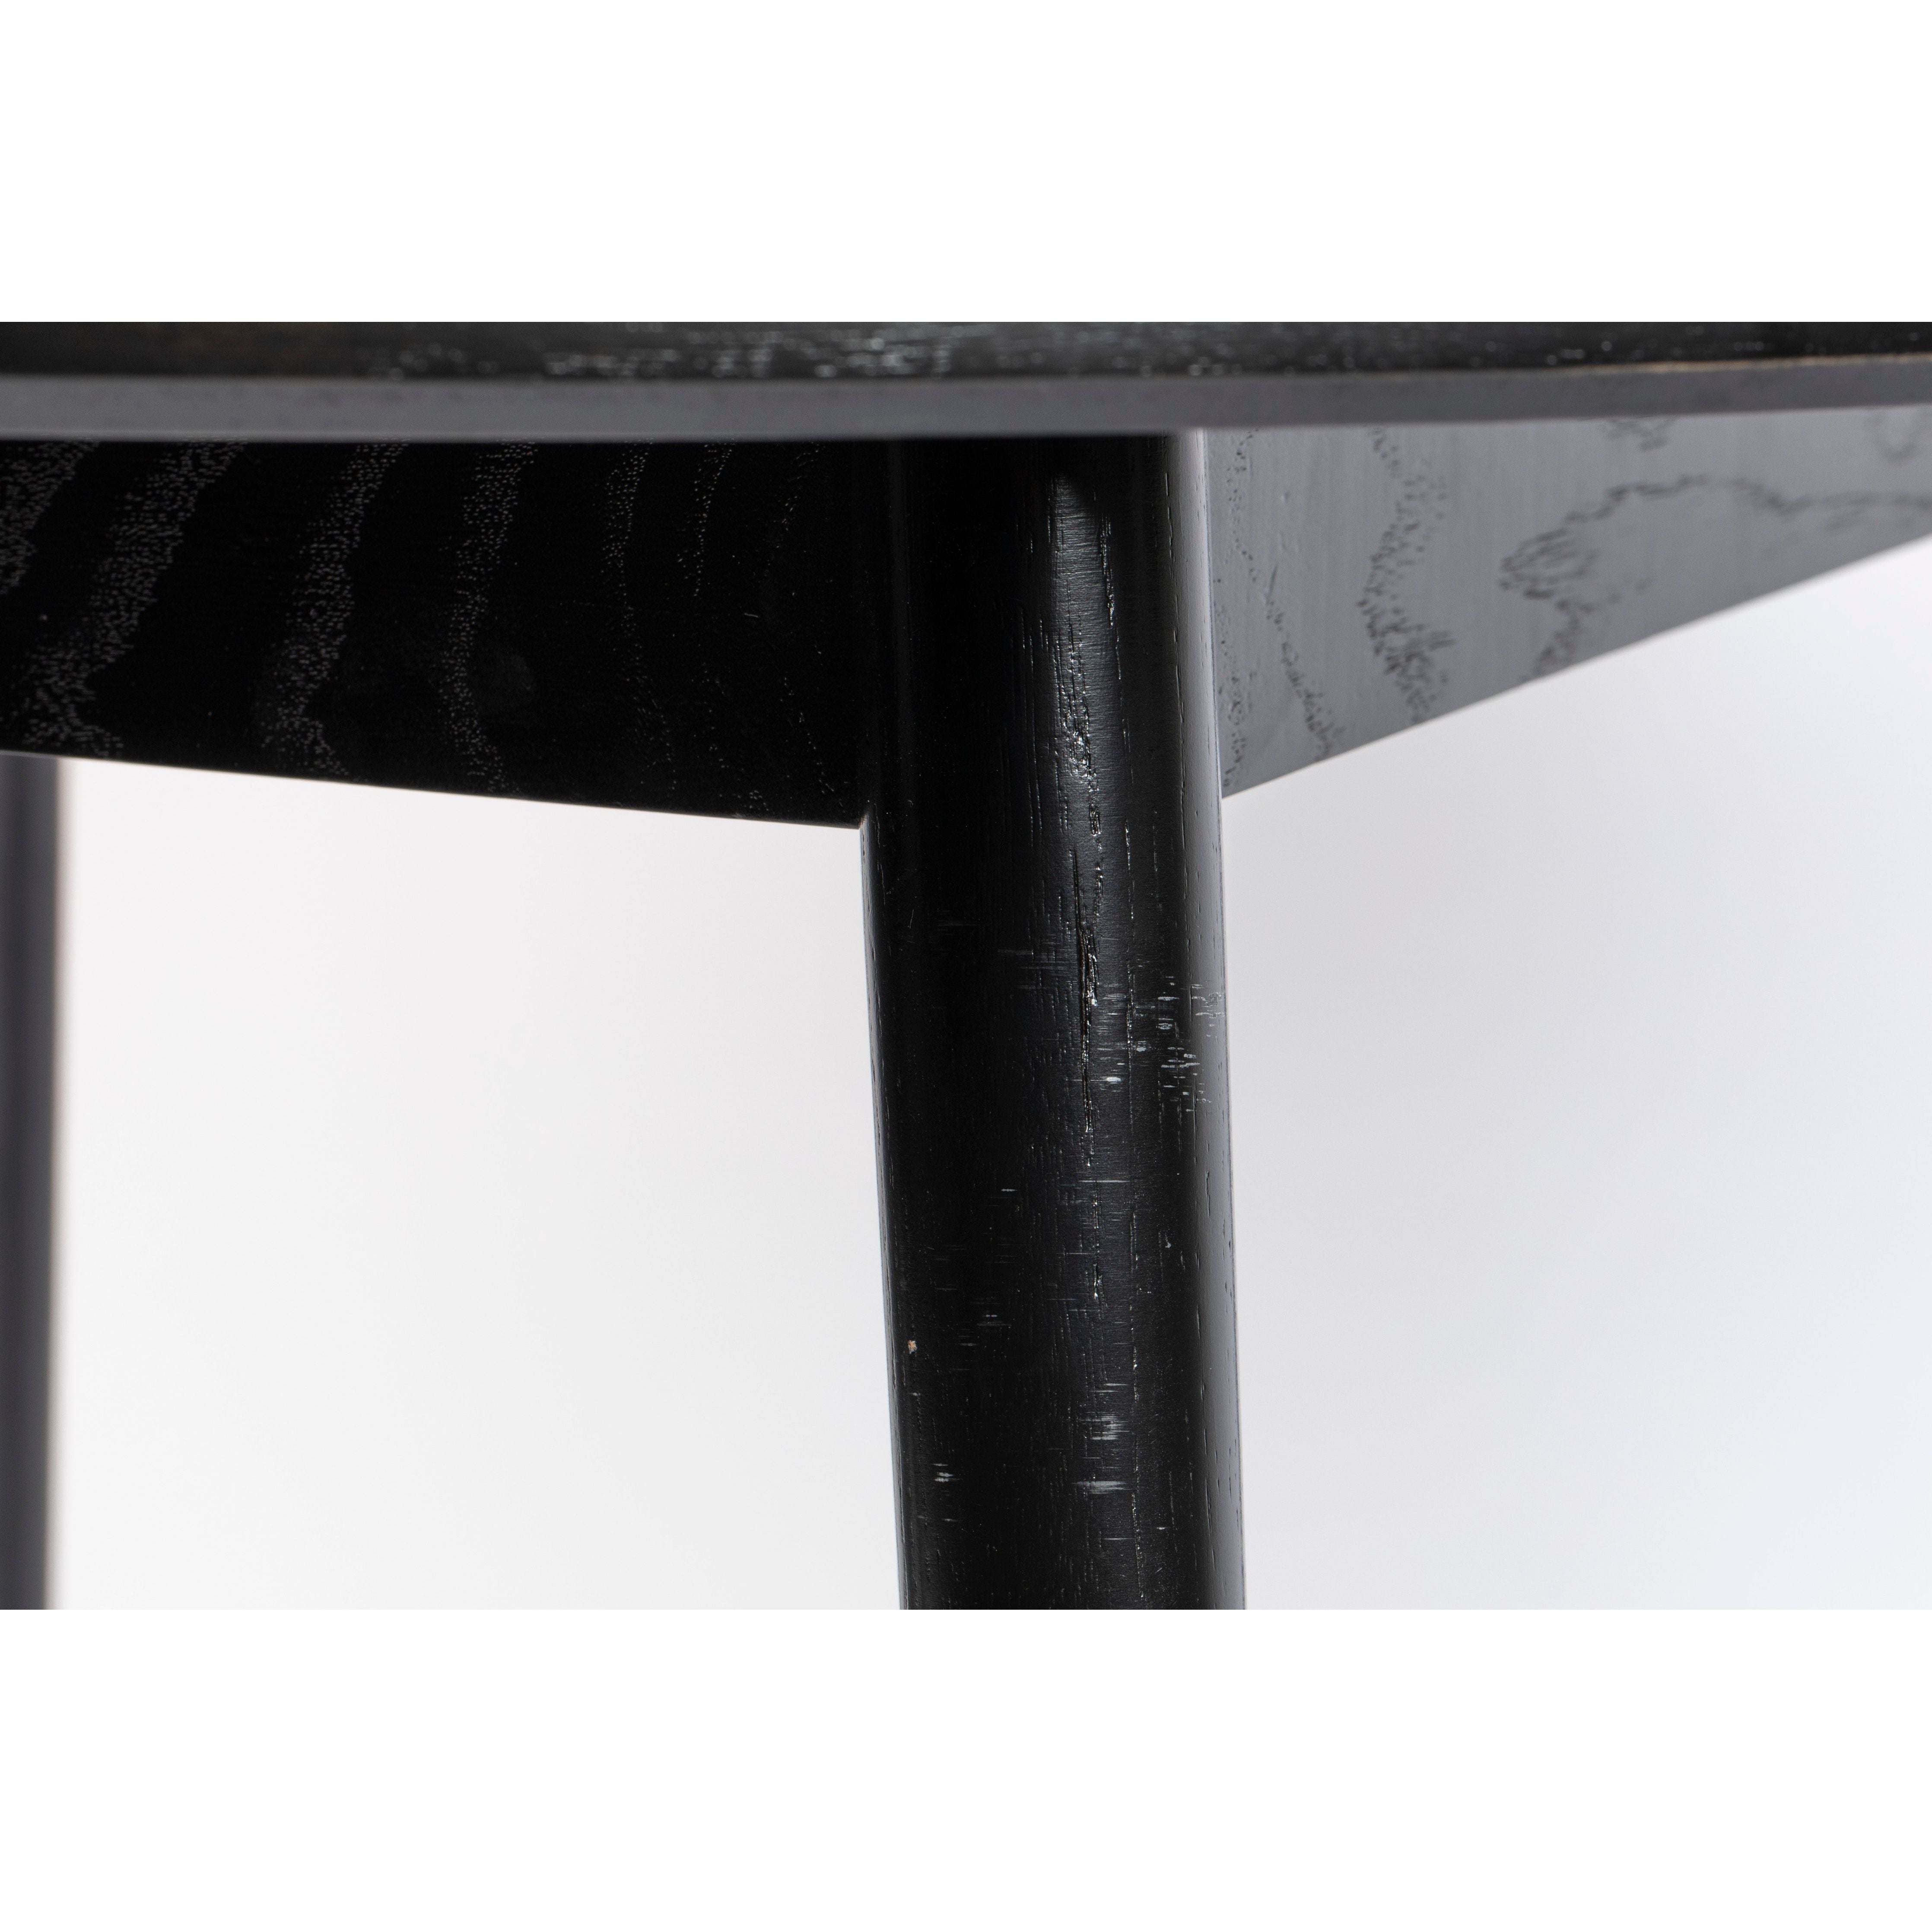 Table fabio 120' black